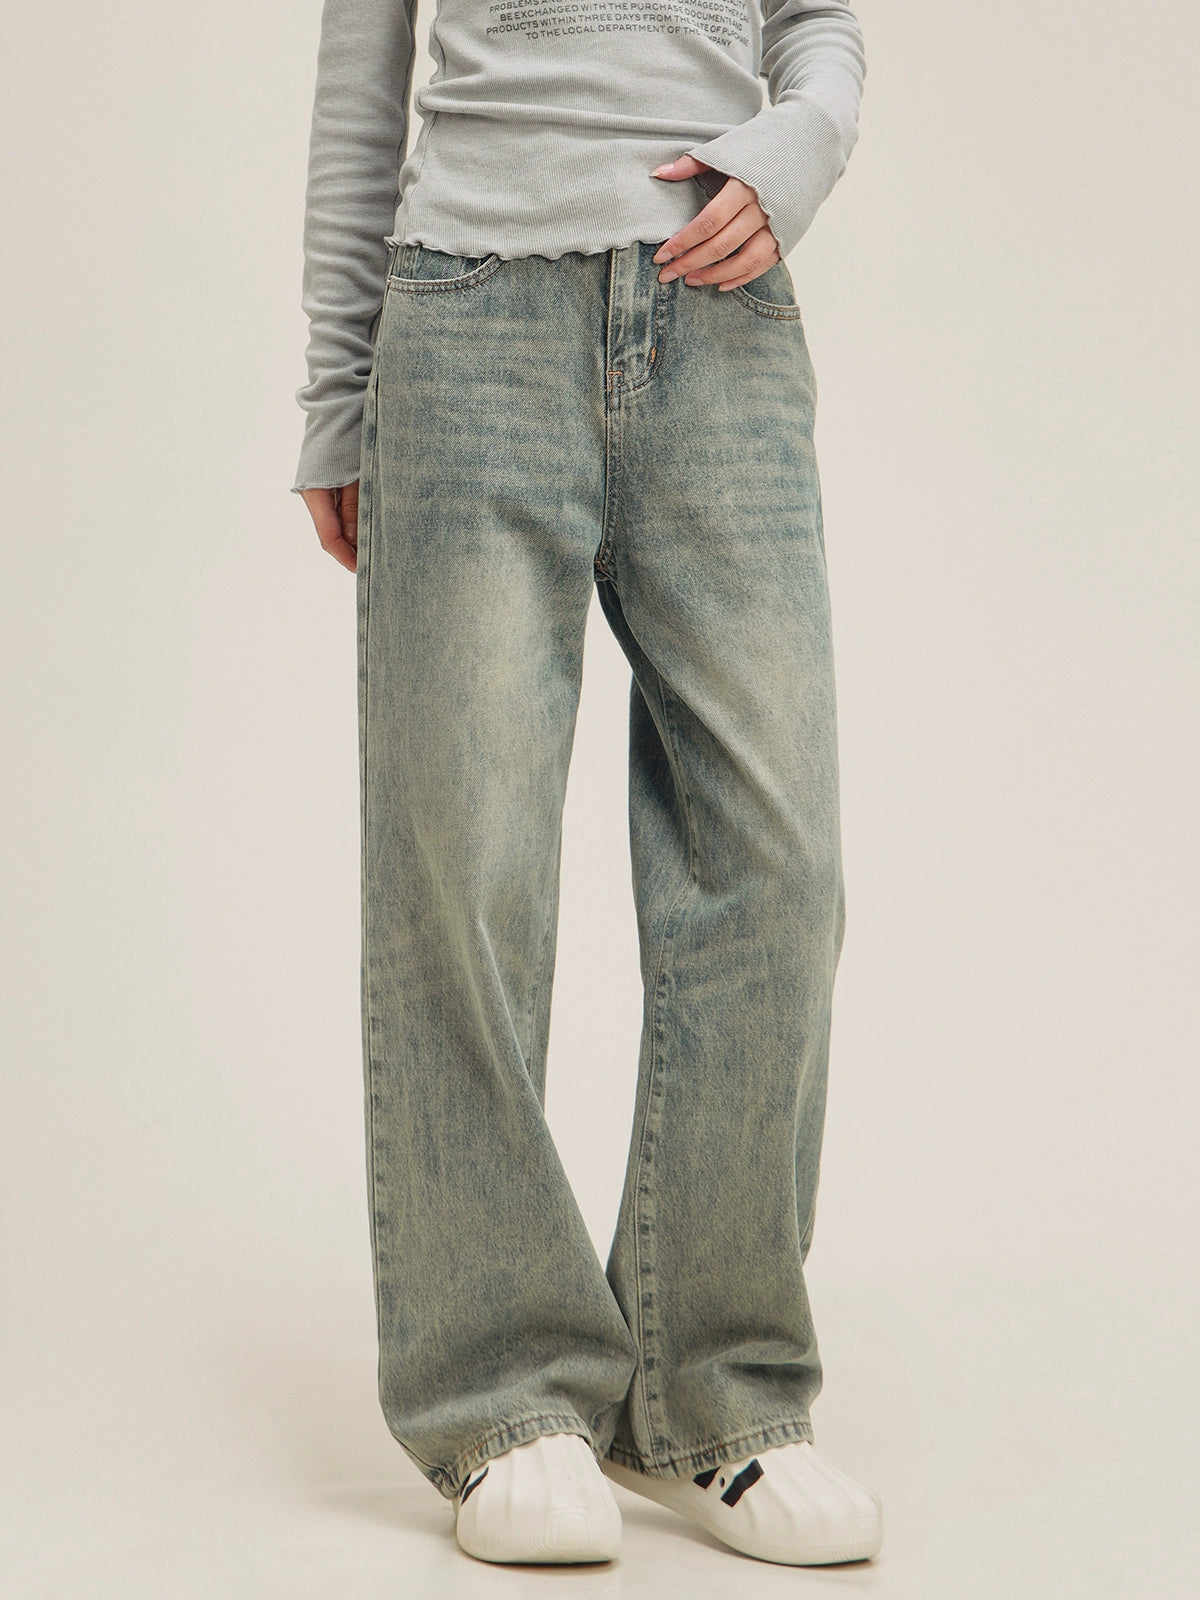 CaptainBeer light-wash mop jeans pants